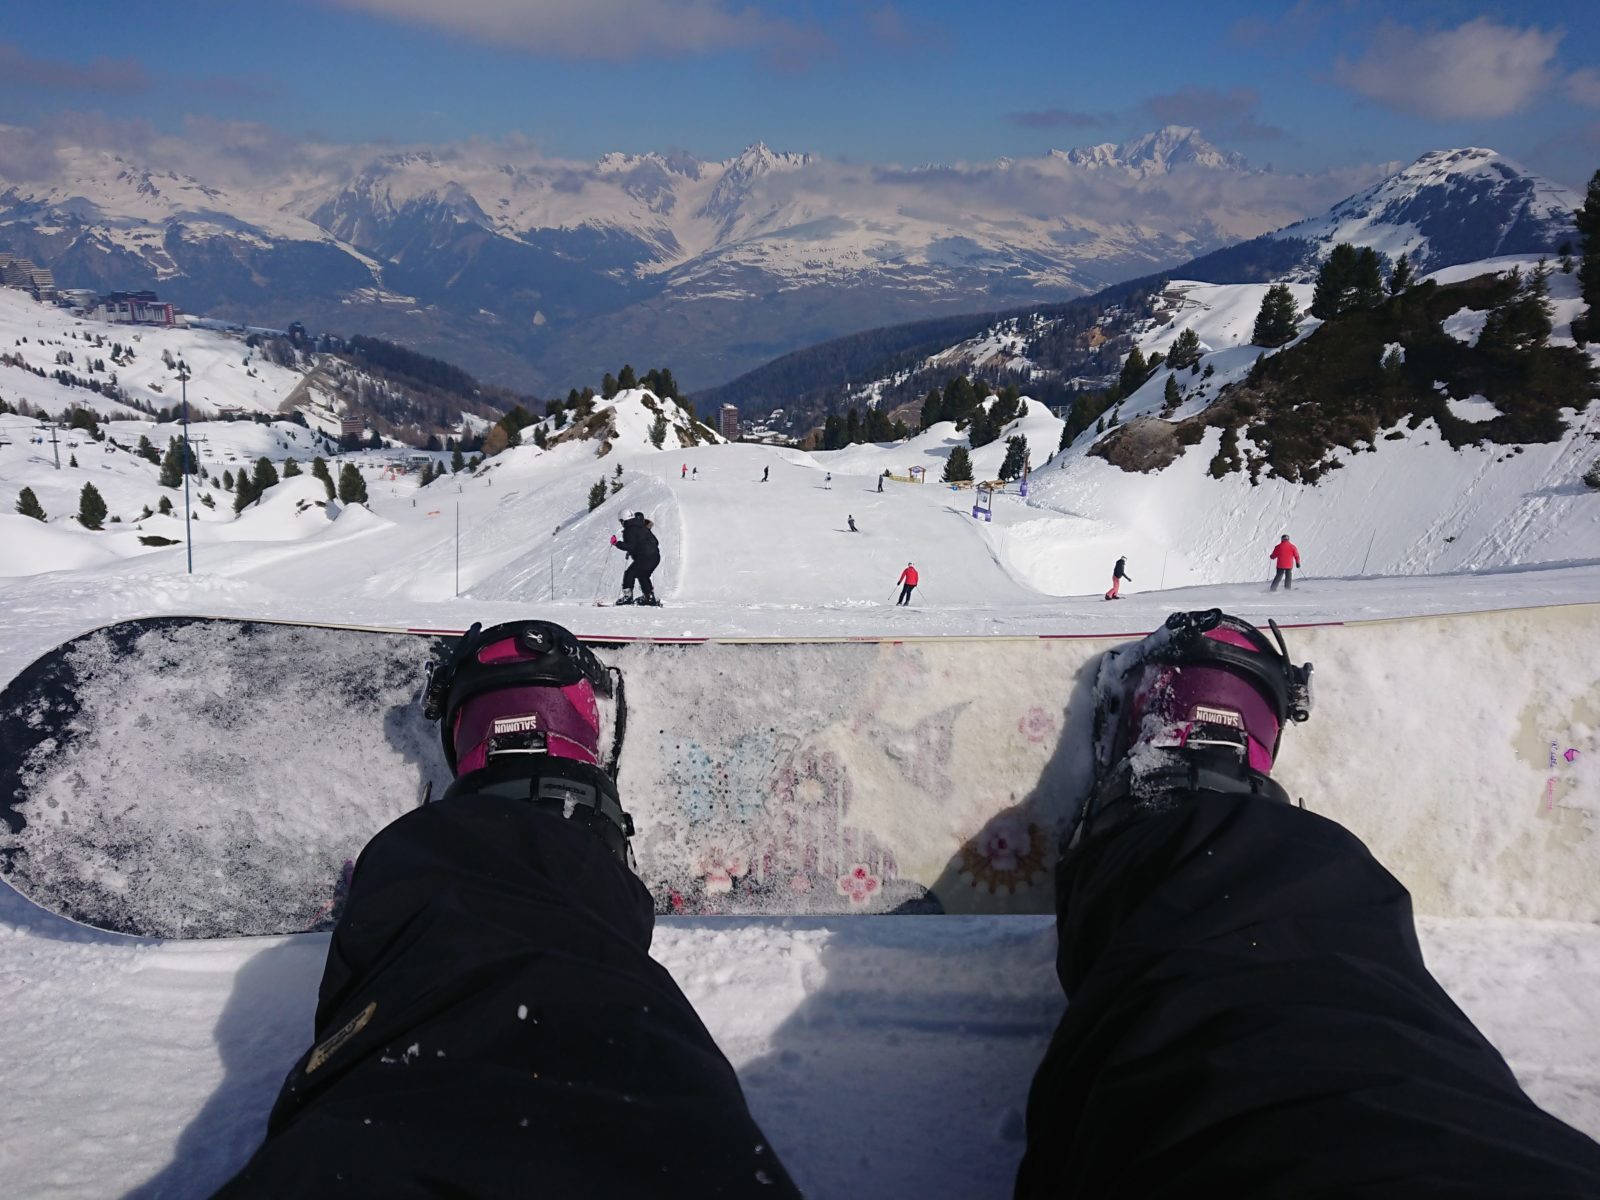 Snowboarding in La Plagne with Will I Ski